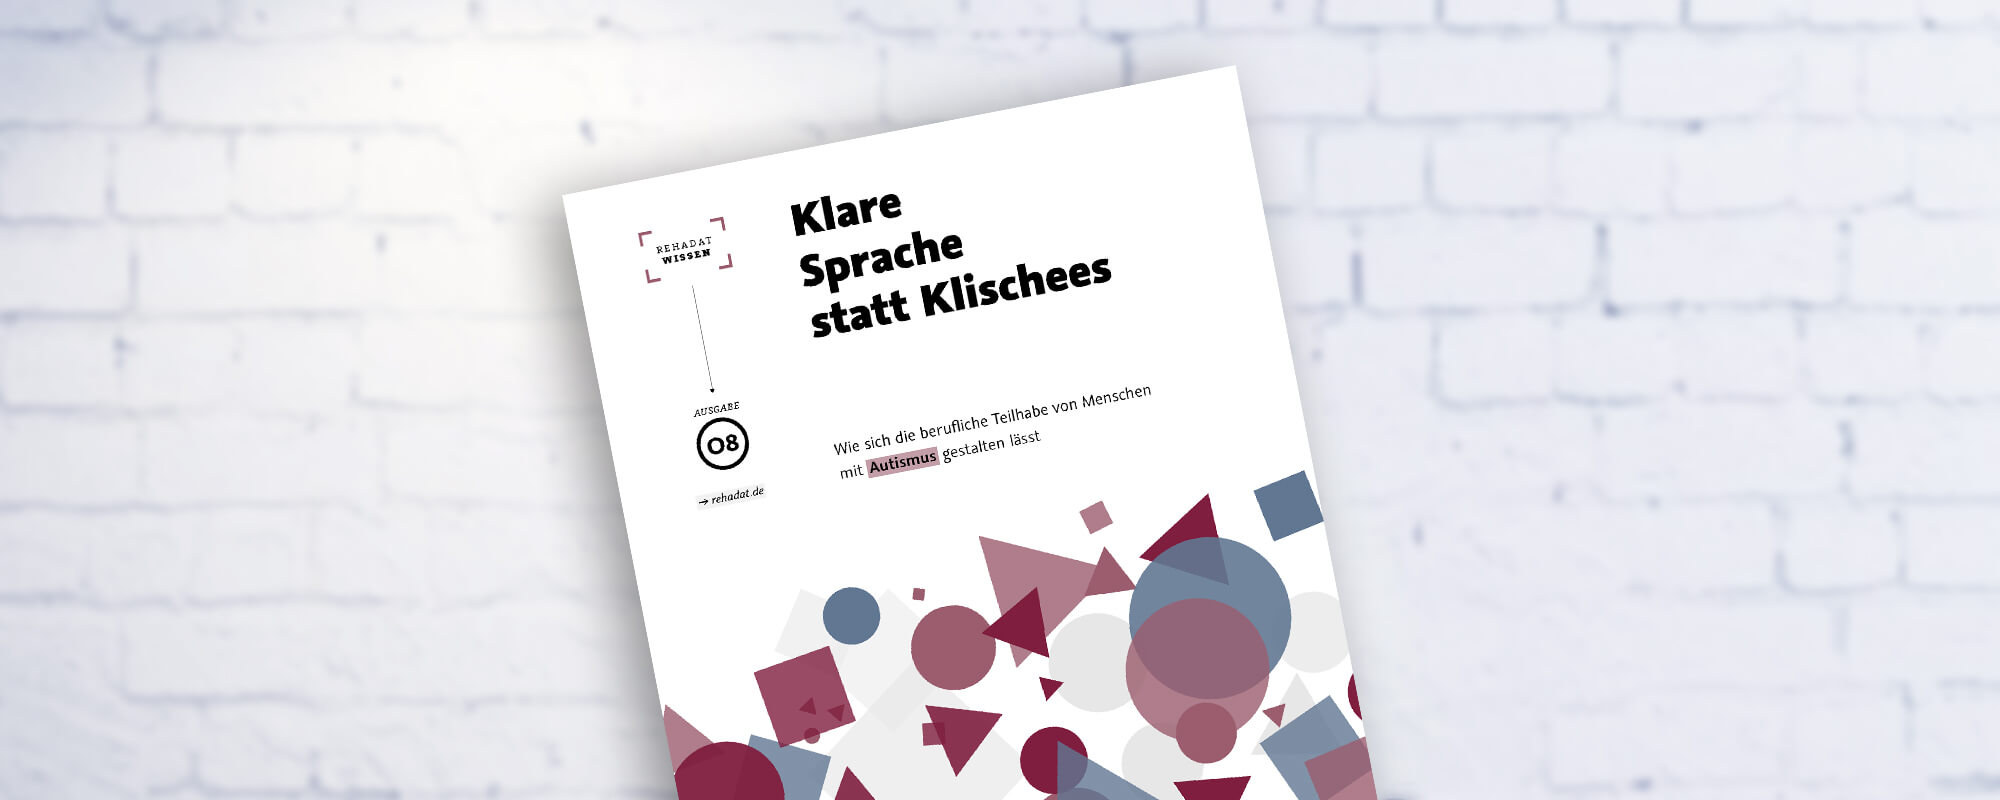 Cover der Publikation "Klare Sprache statt Klischees". 